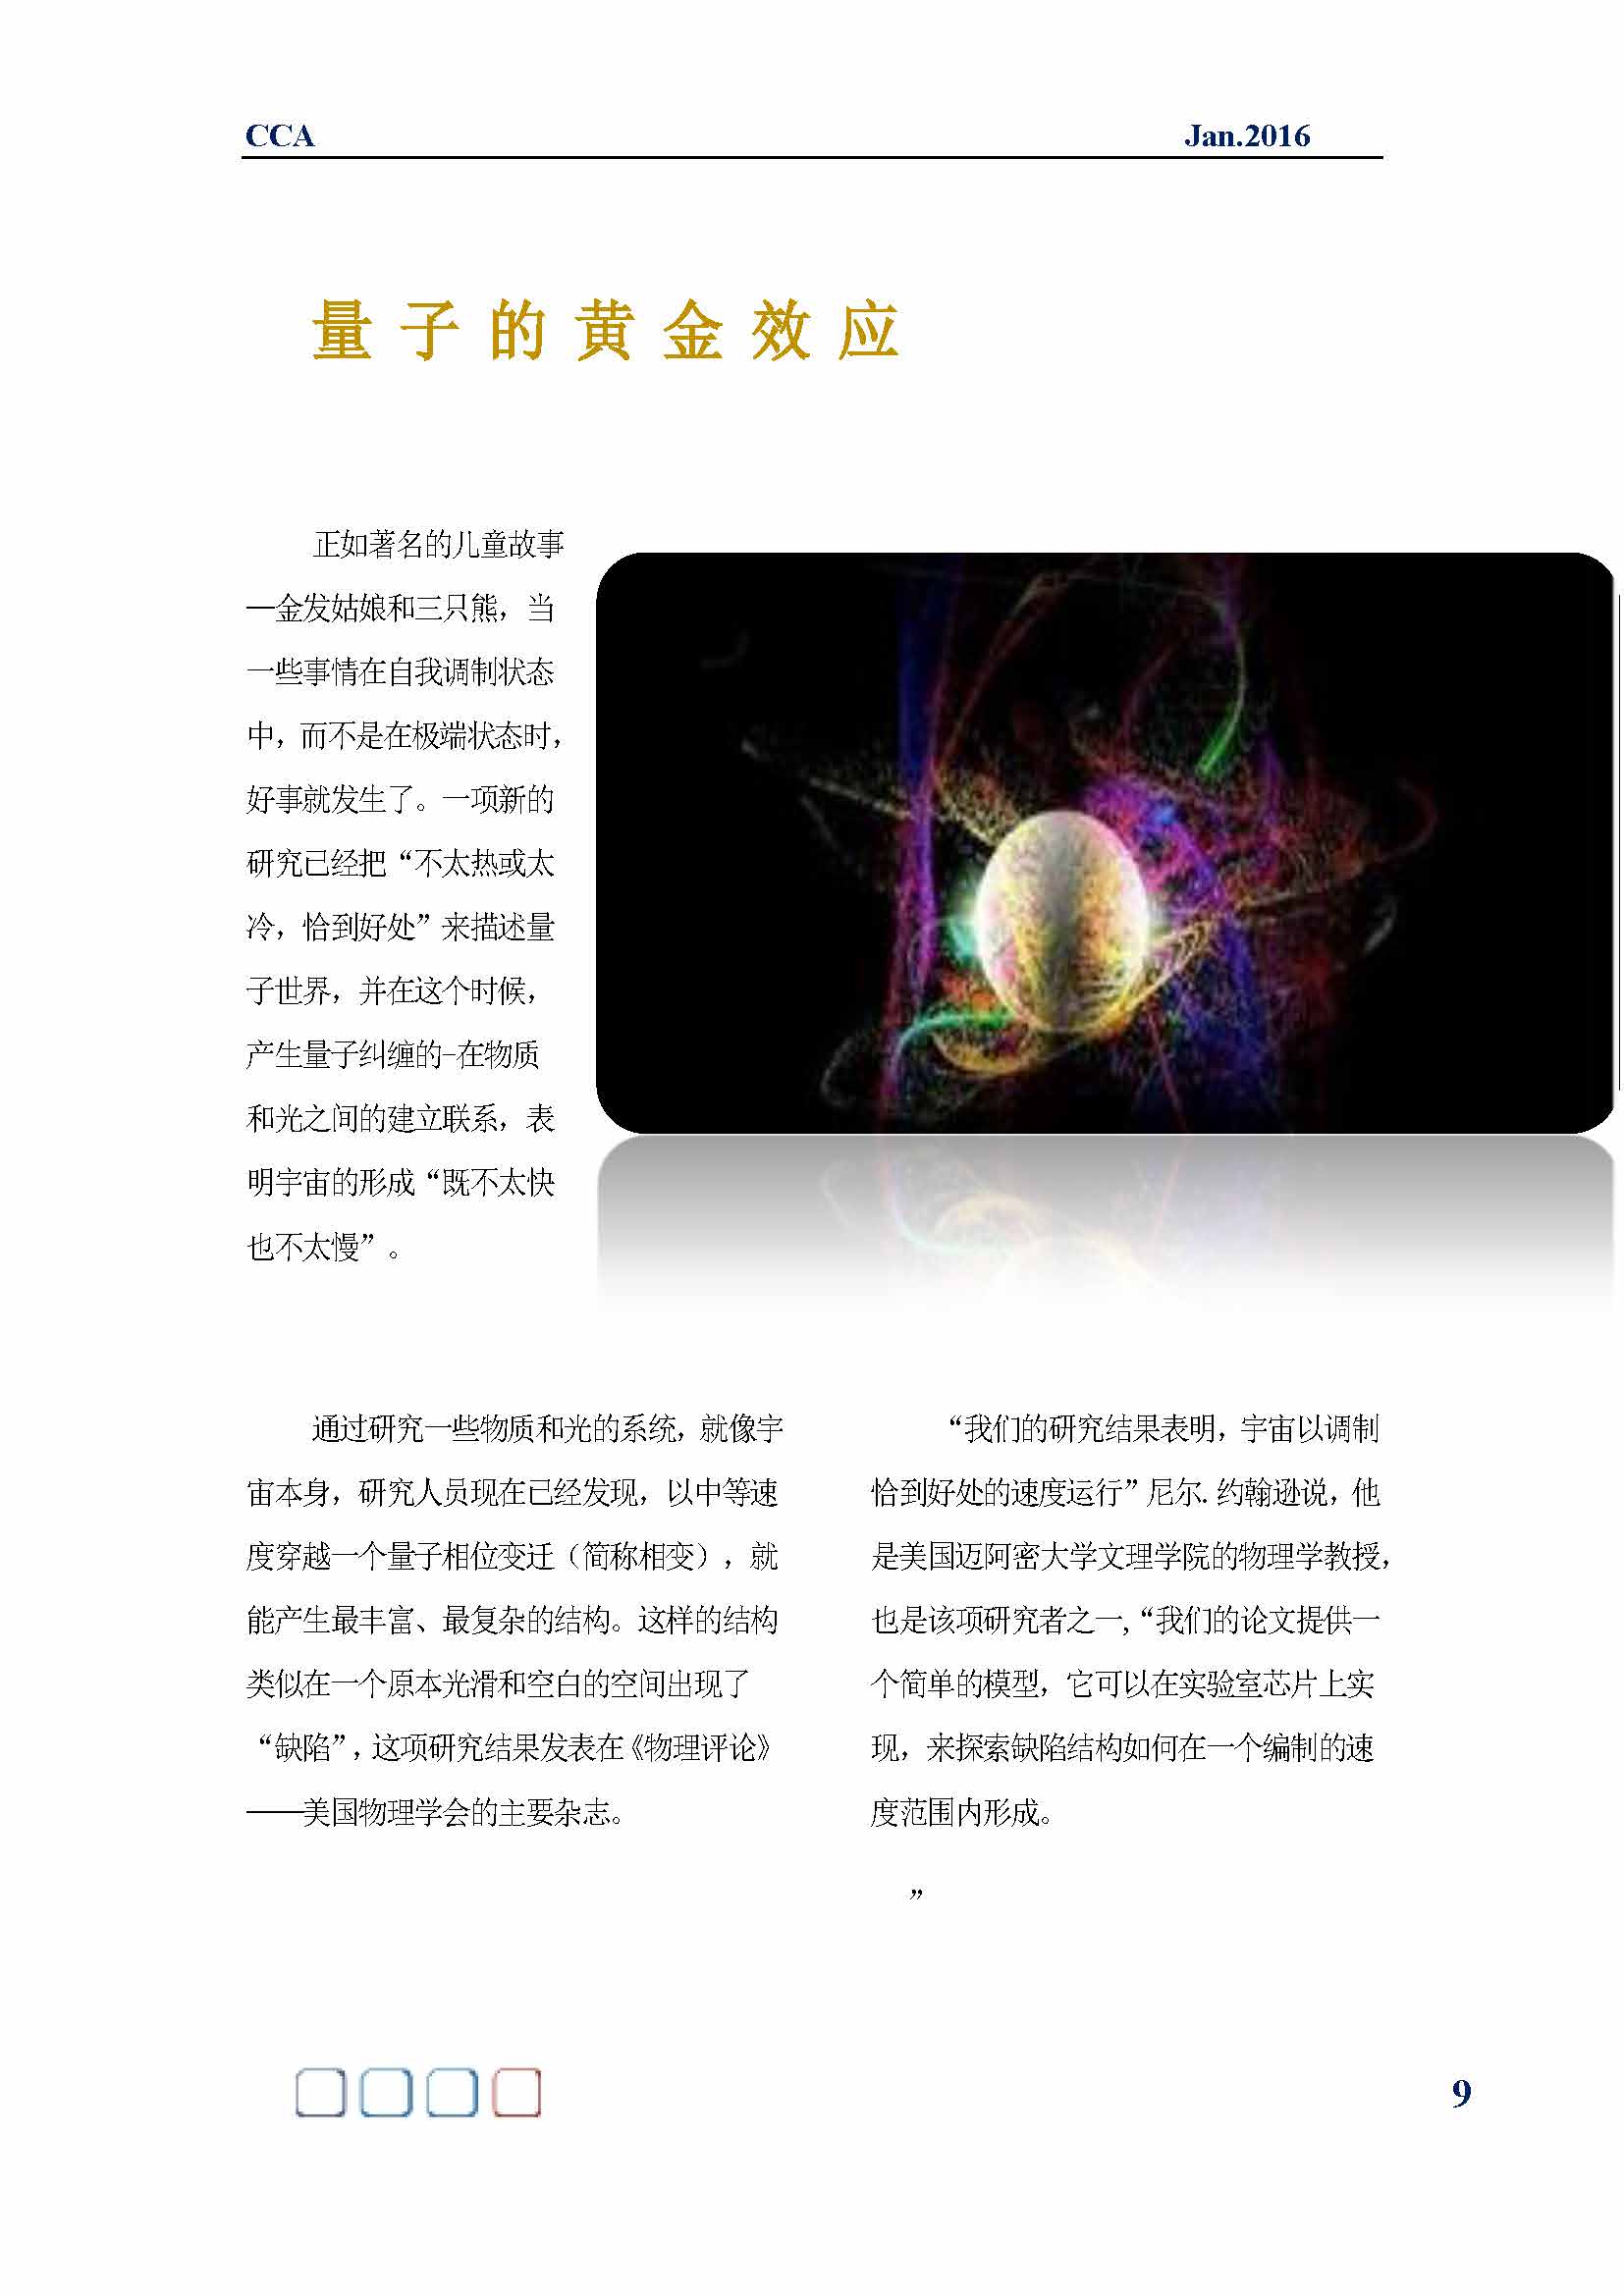 中国科技咨询协会国际快讯（第二十六期）_页面_11.jpg